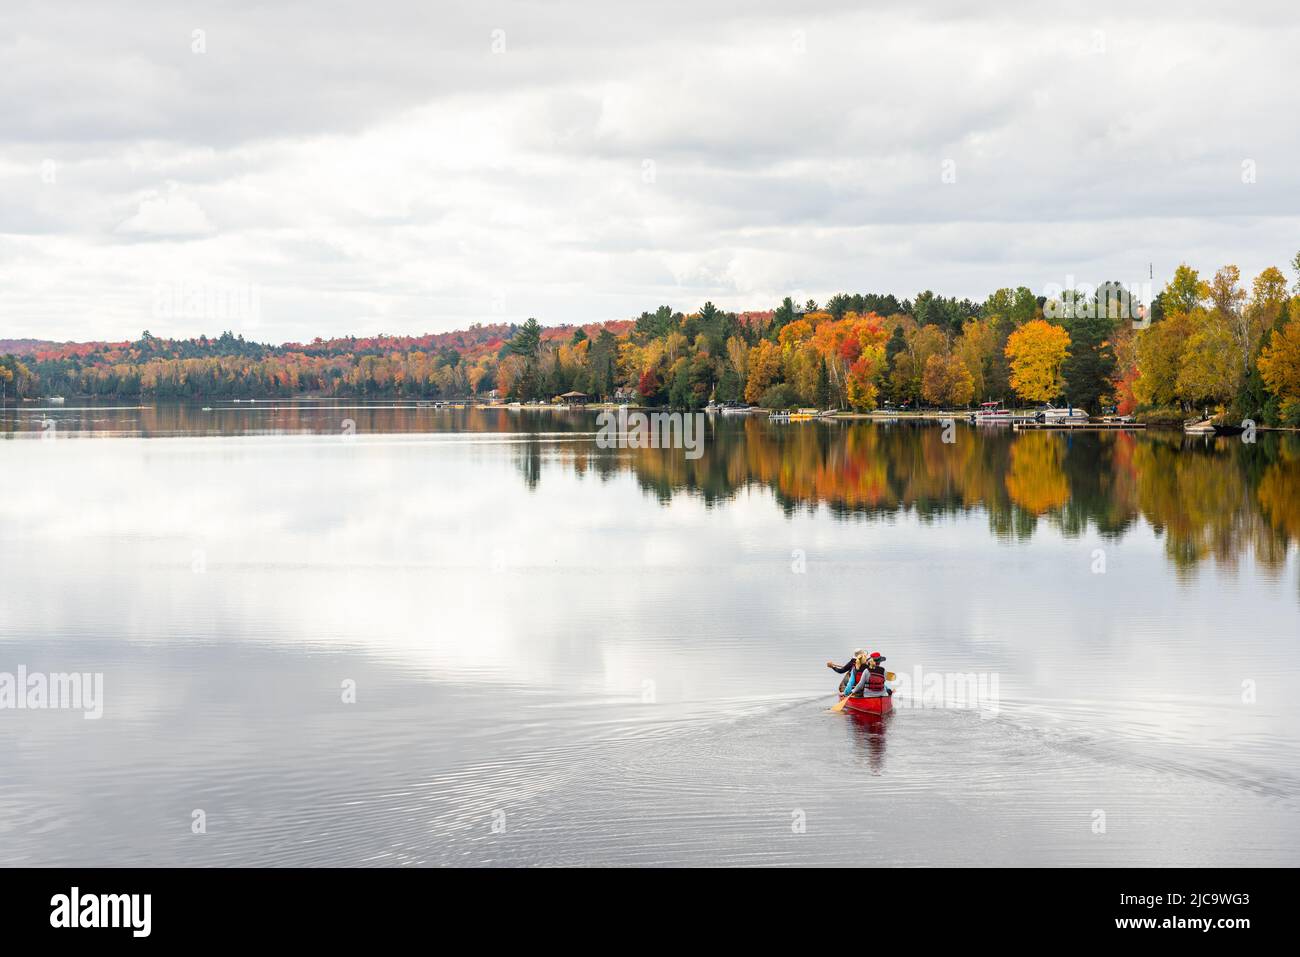 Les gens font du canoë sur un beau lac entouré de forêt au sommet du feuillage d'automne, un jour d'automne nuageux Banque D'Images